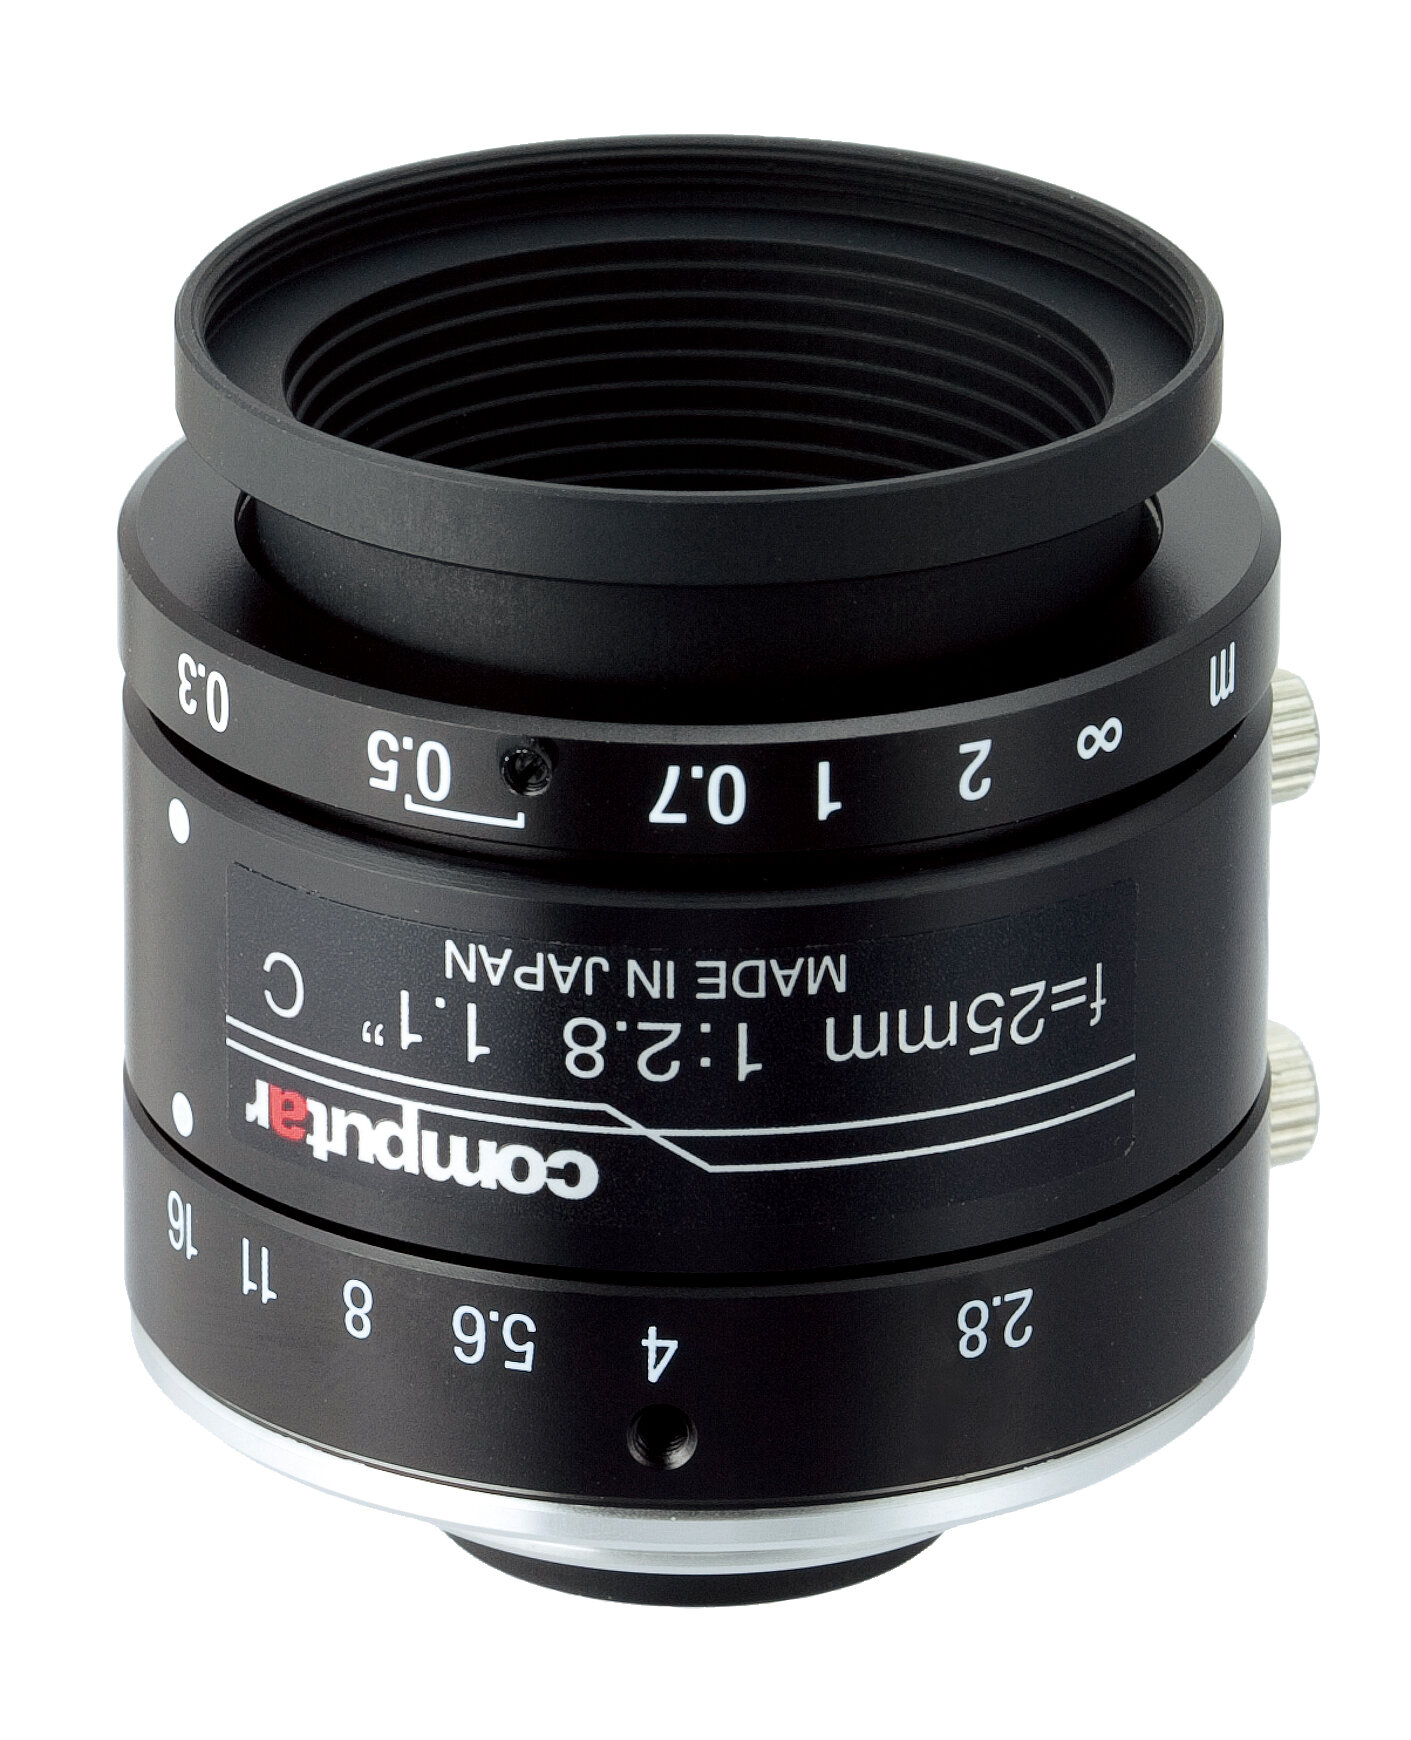 Details about   Computar CCTV Lens T0812 FICS-3 